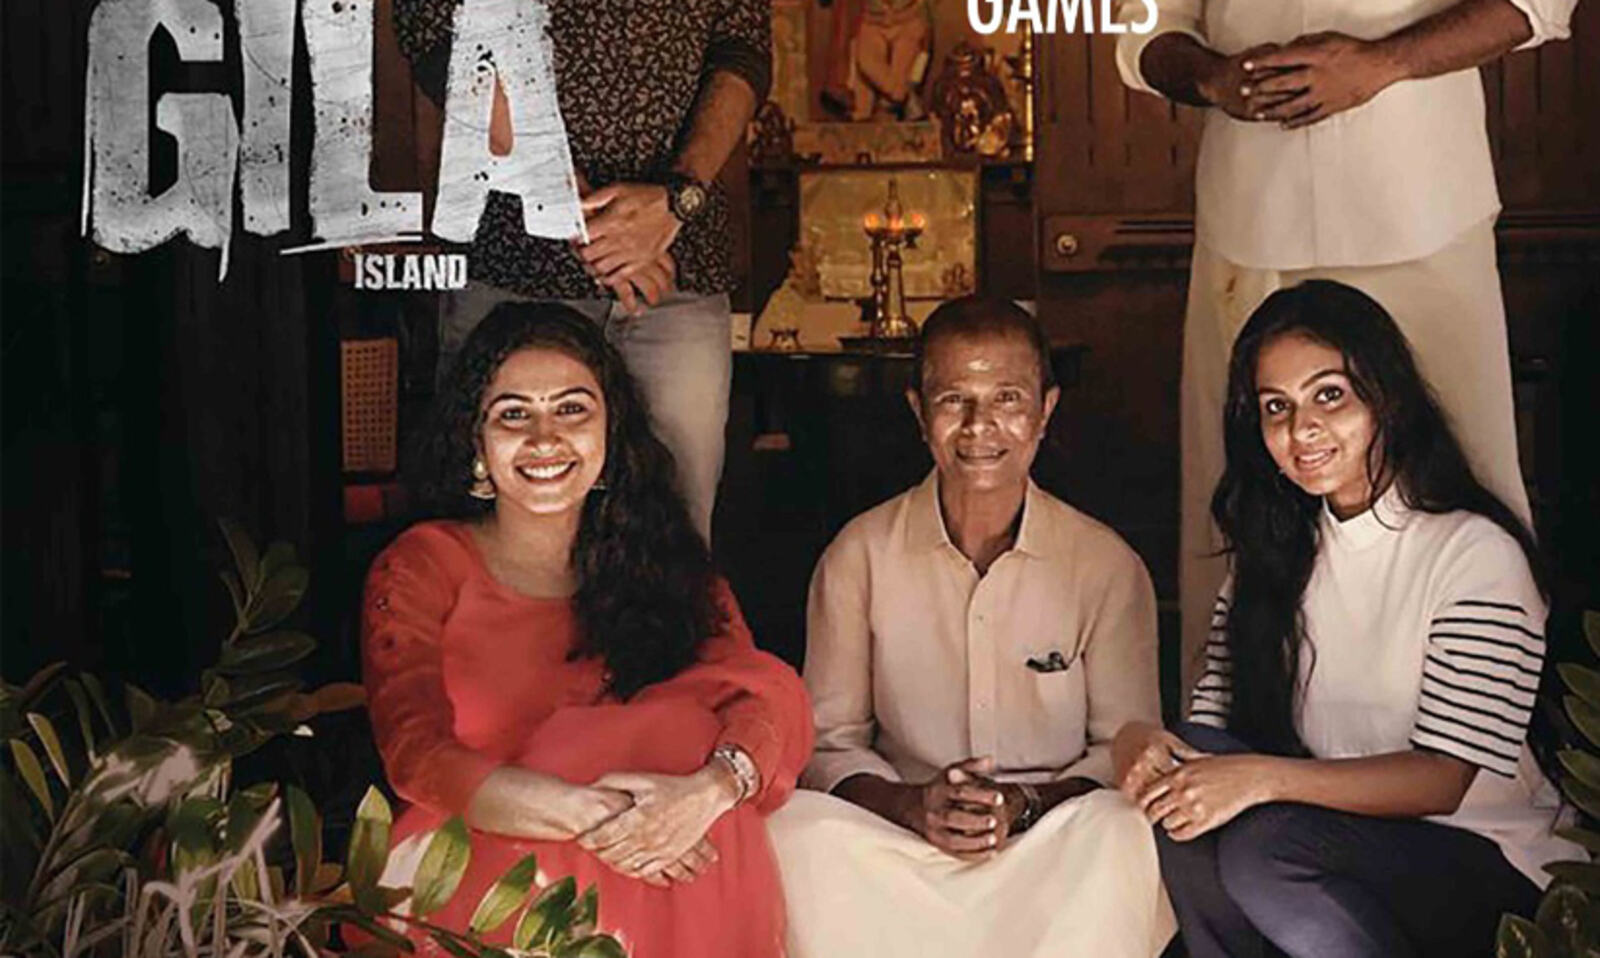 ഇന്ദ്രൻസും കൈലാഷും കേന്ദ്ര കഥാപാത്രങ്ങളായ 'ഗില ഐലൻഡ്' പ്രദർശനത്തിന് | gila  island movie news | Madhyamam